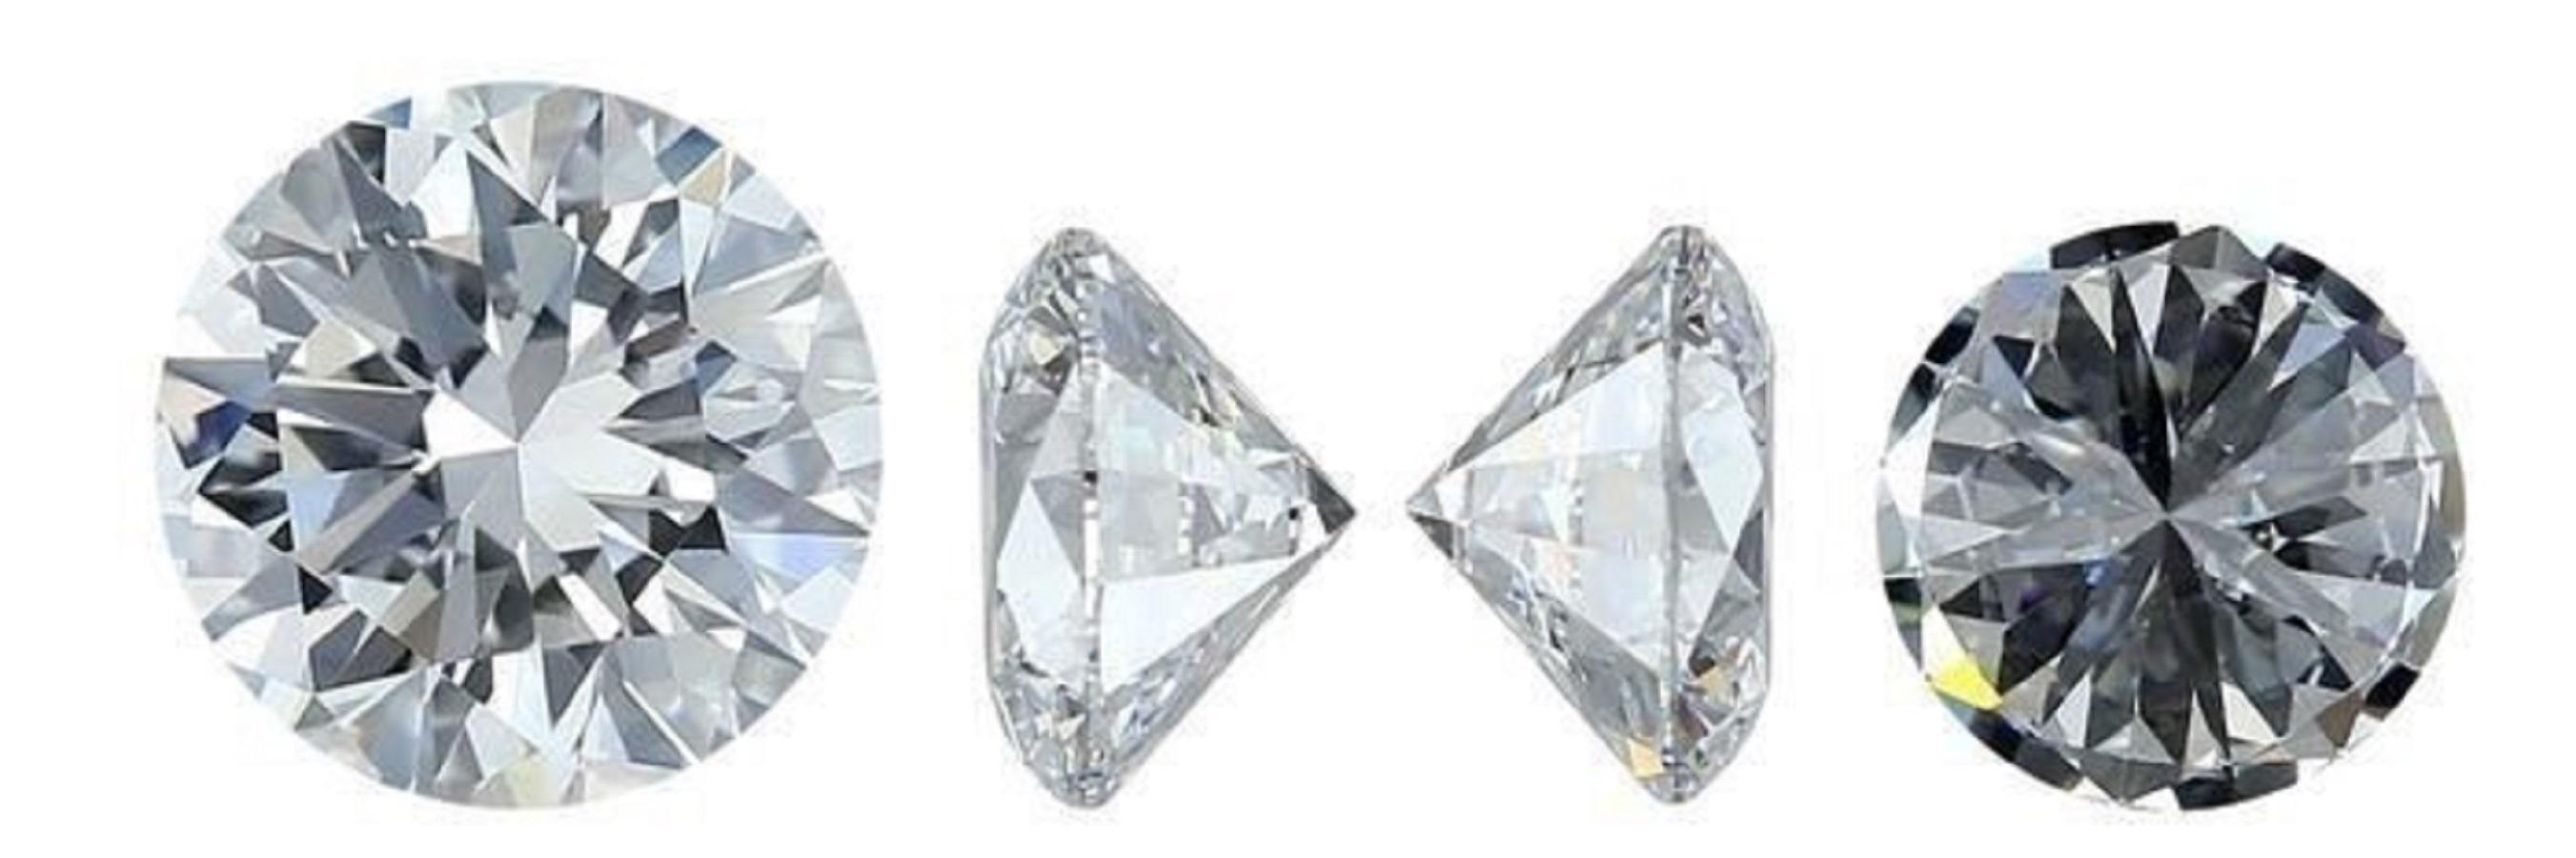 Une paire de diamants naturels étincelants et de taille idéale de 1,43 carat D IF avec une excellente coupe. Ce diamant a la couleur et la clarté les plus élevées possibles. Ce diamant est accompagné d'un certificat IGI et d'un numéro d'inscription